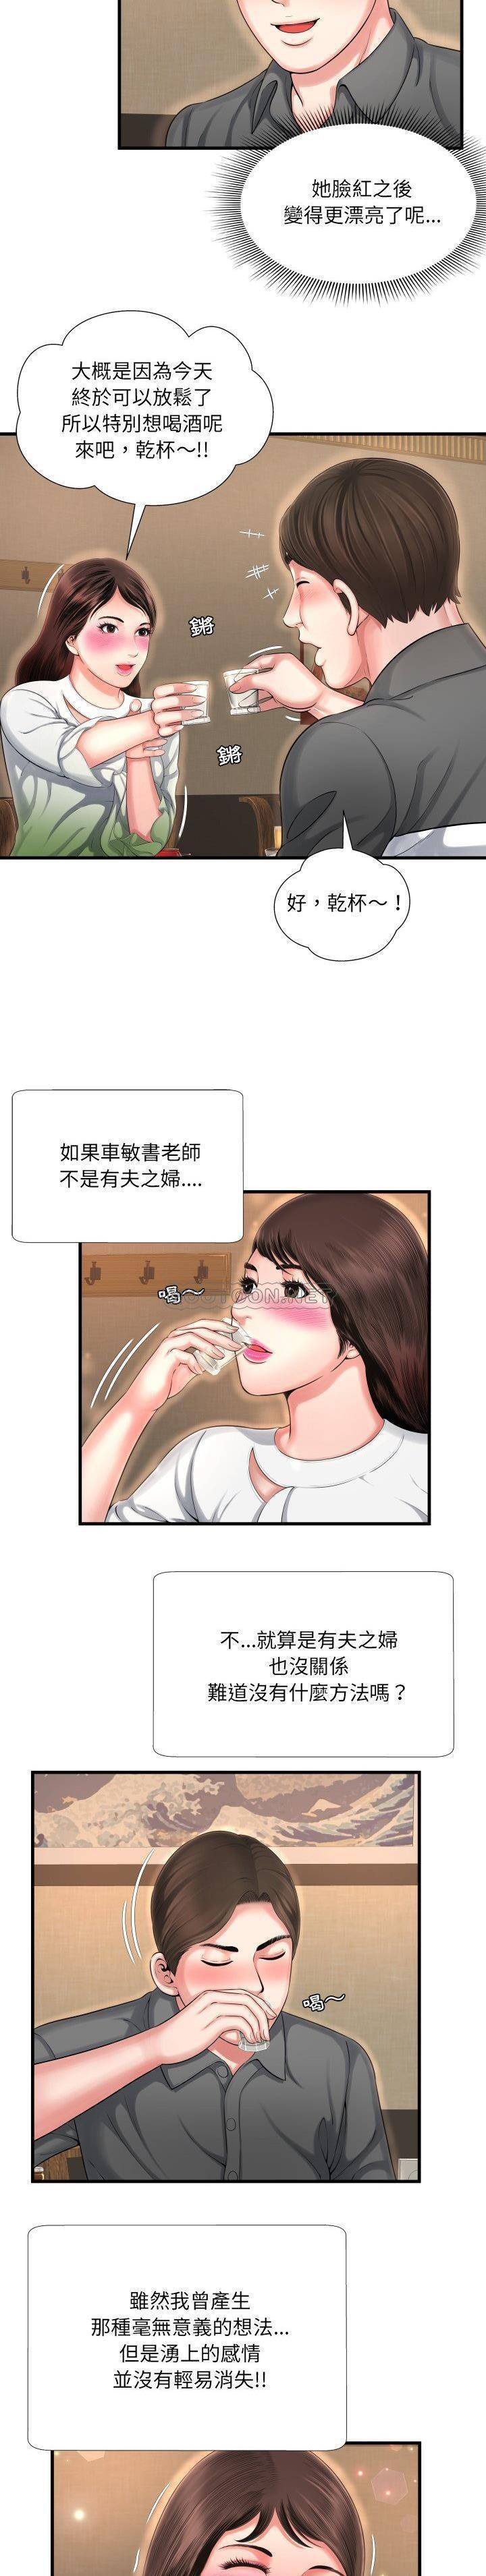 韩国污漫画 深淵 第6话 17